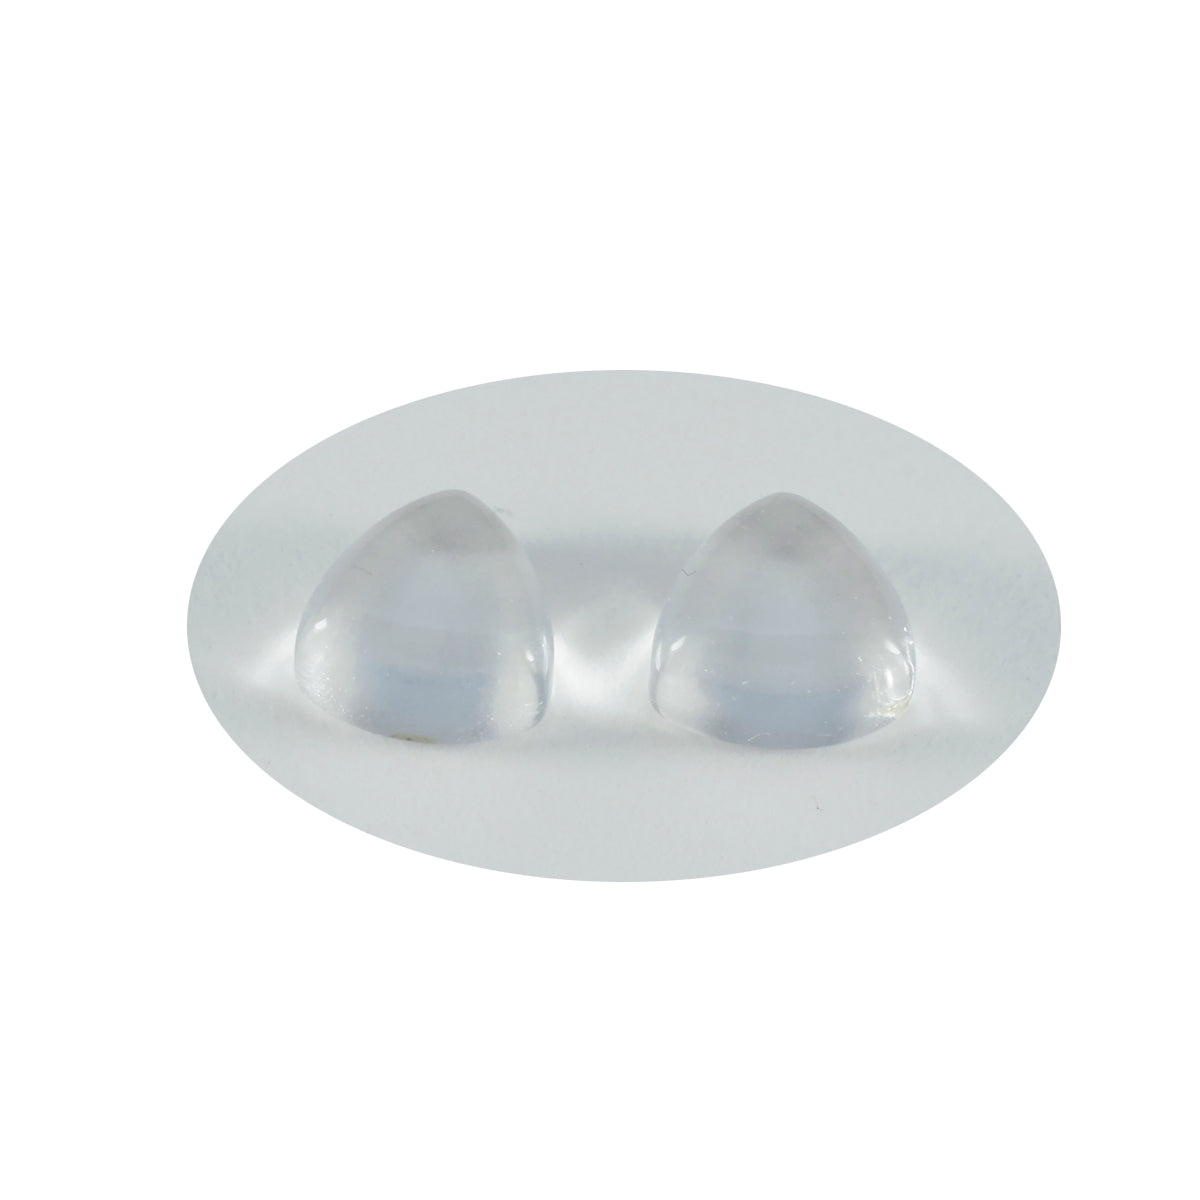 Riyogems 1 cabujón de cuarzo de cristal blanco de 13 x 13 mm con forma de billón, piedra preciosa suelta de calidad increíble